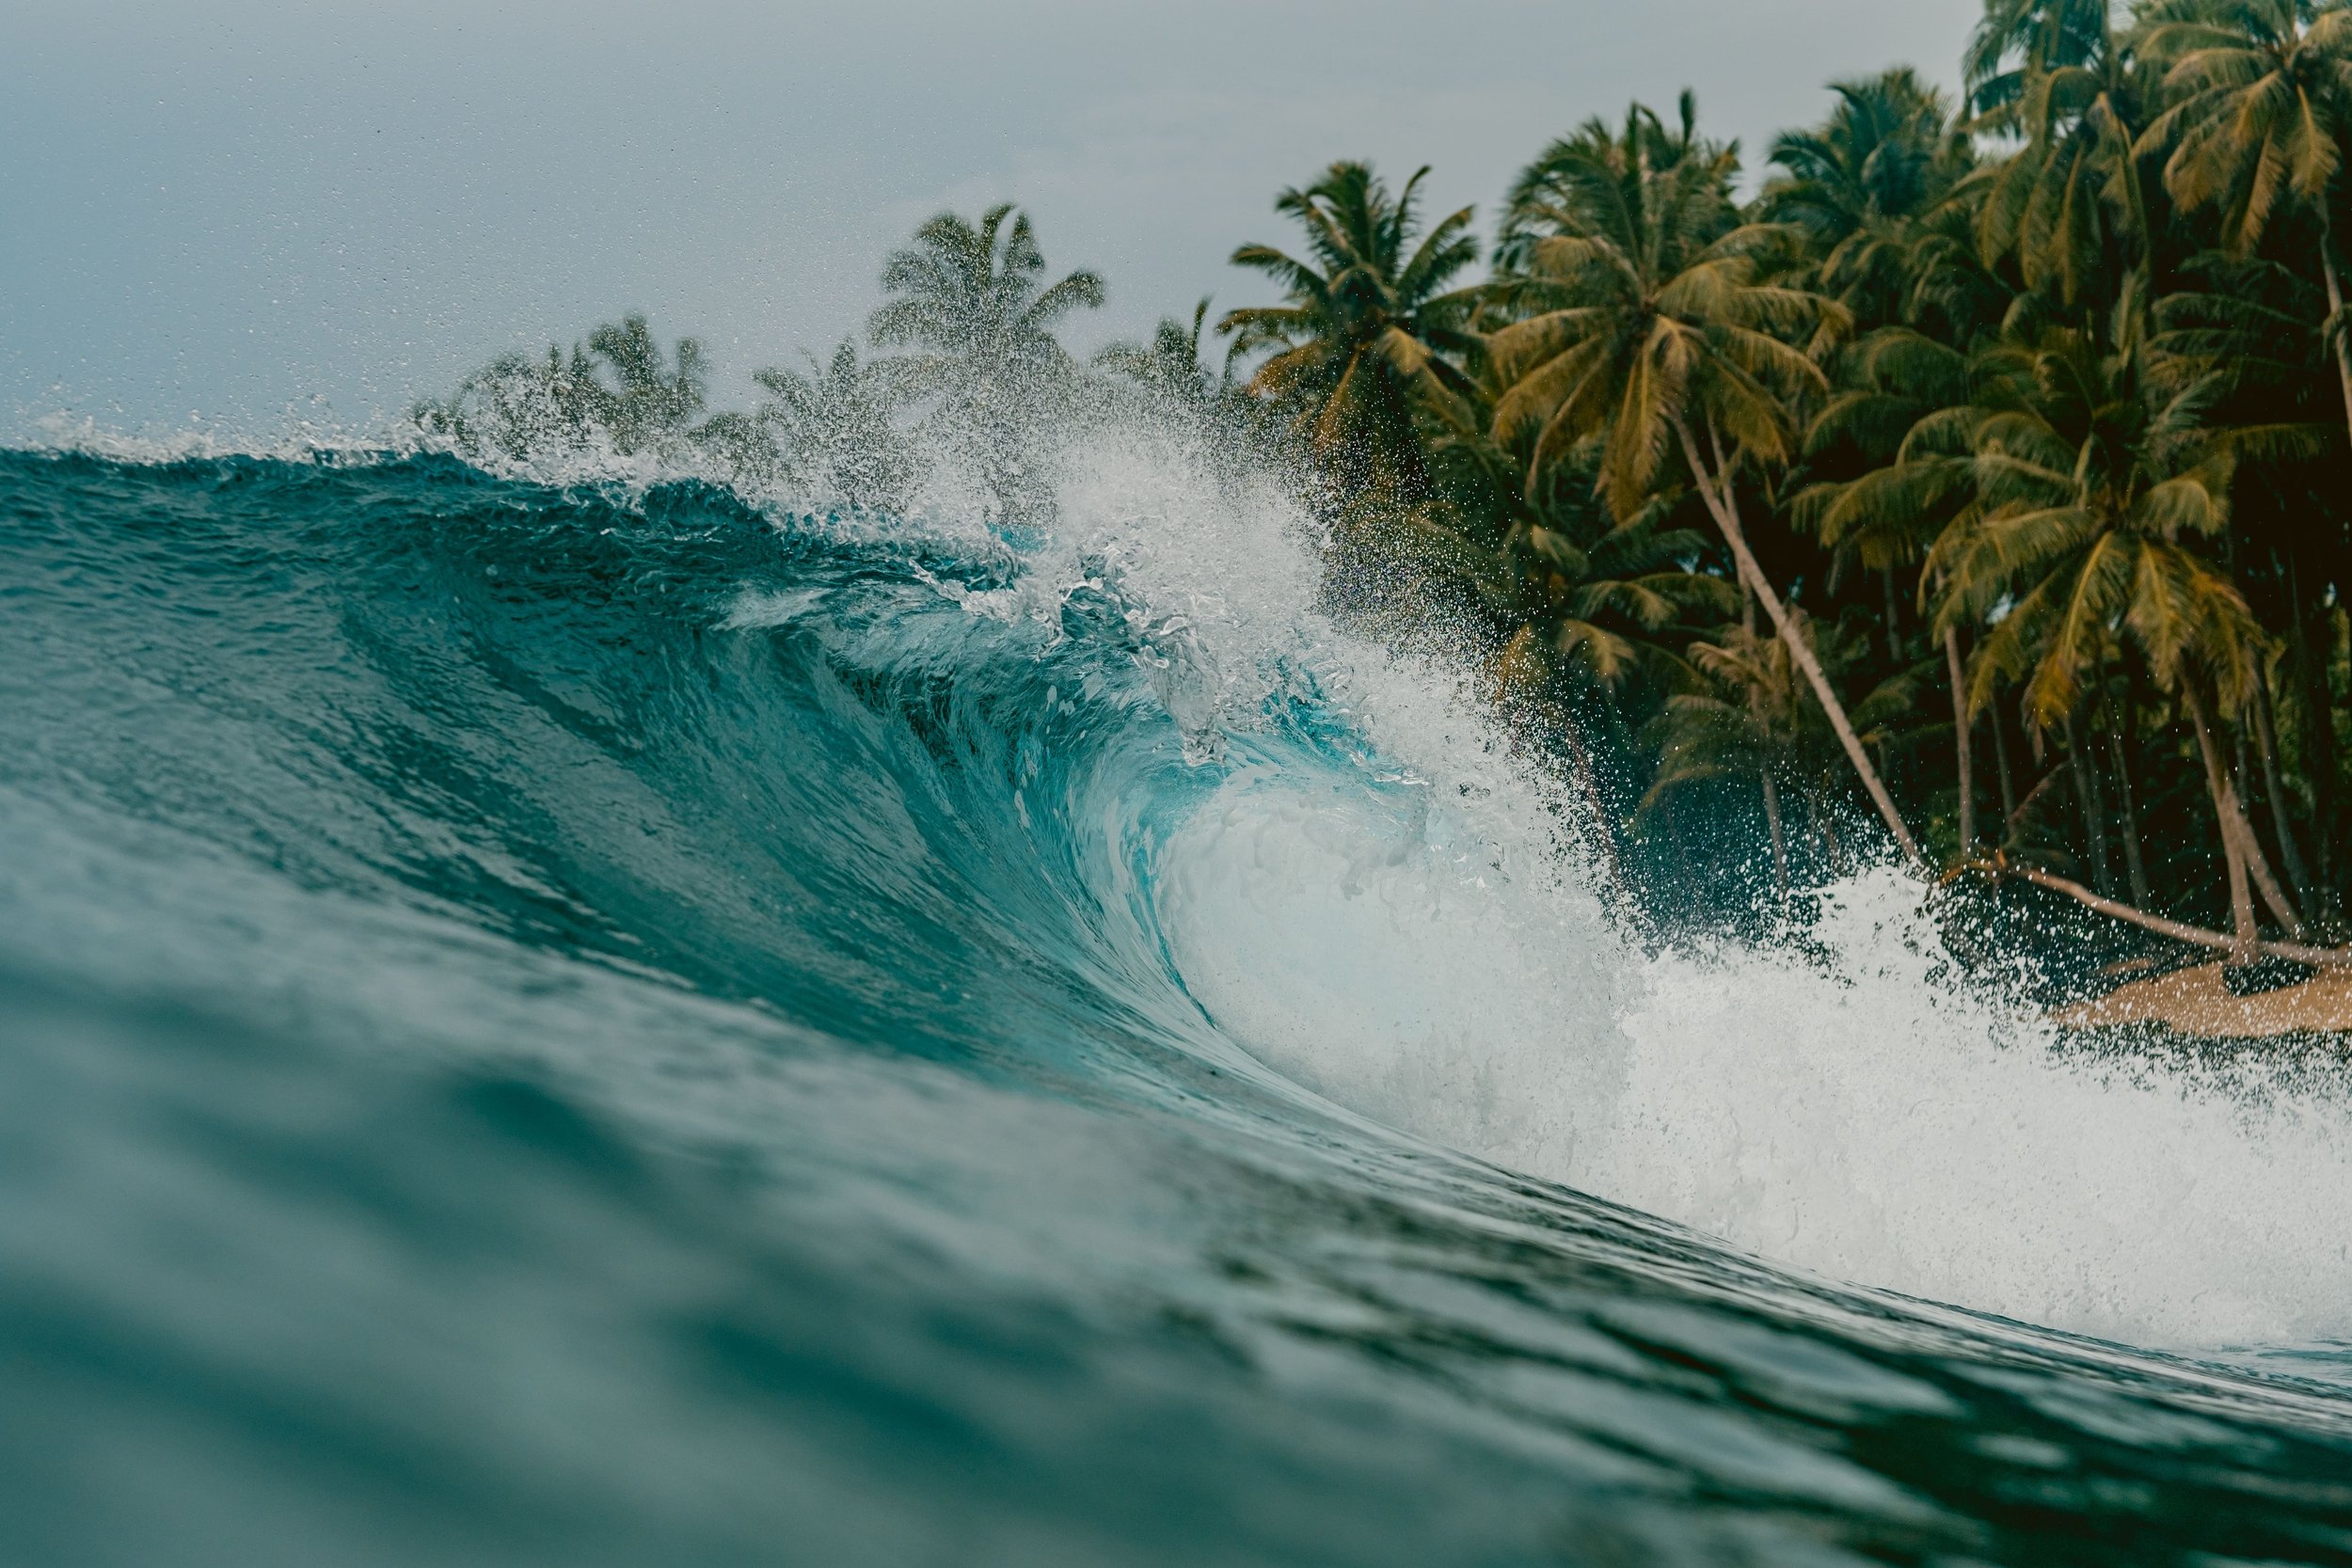 inside-view-huge-breaking-wave-sea-mentawai-islands-indonesia-min.jpg